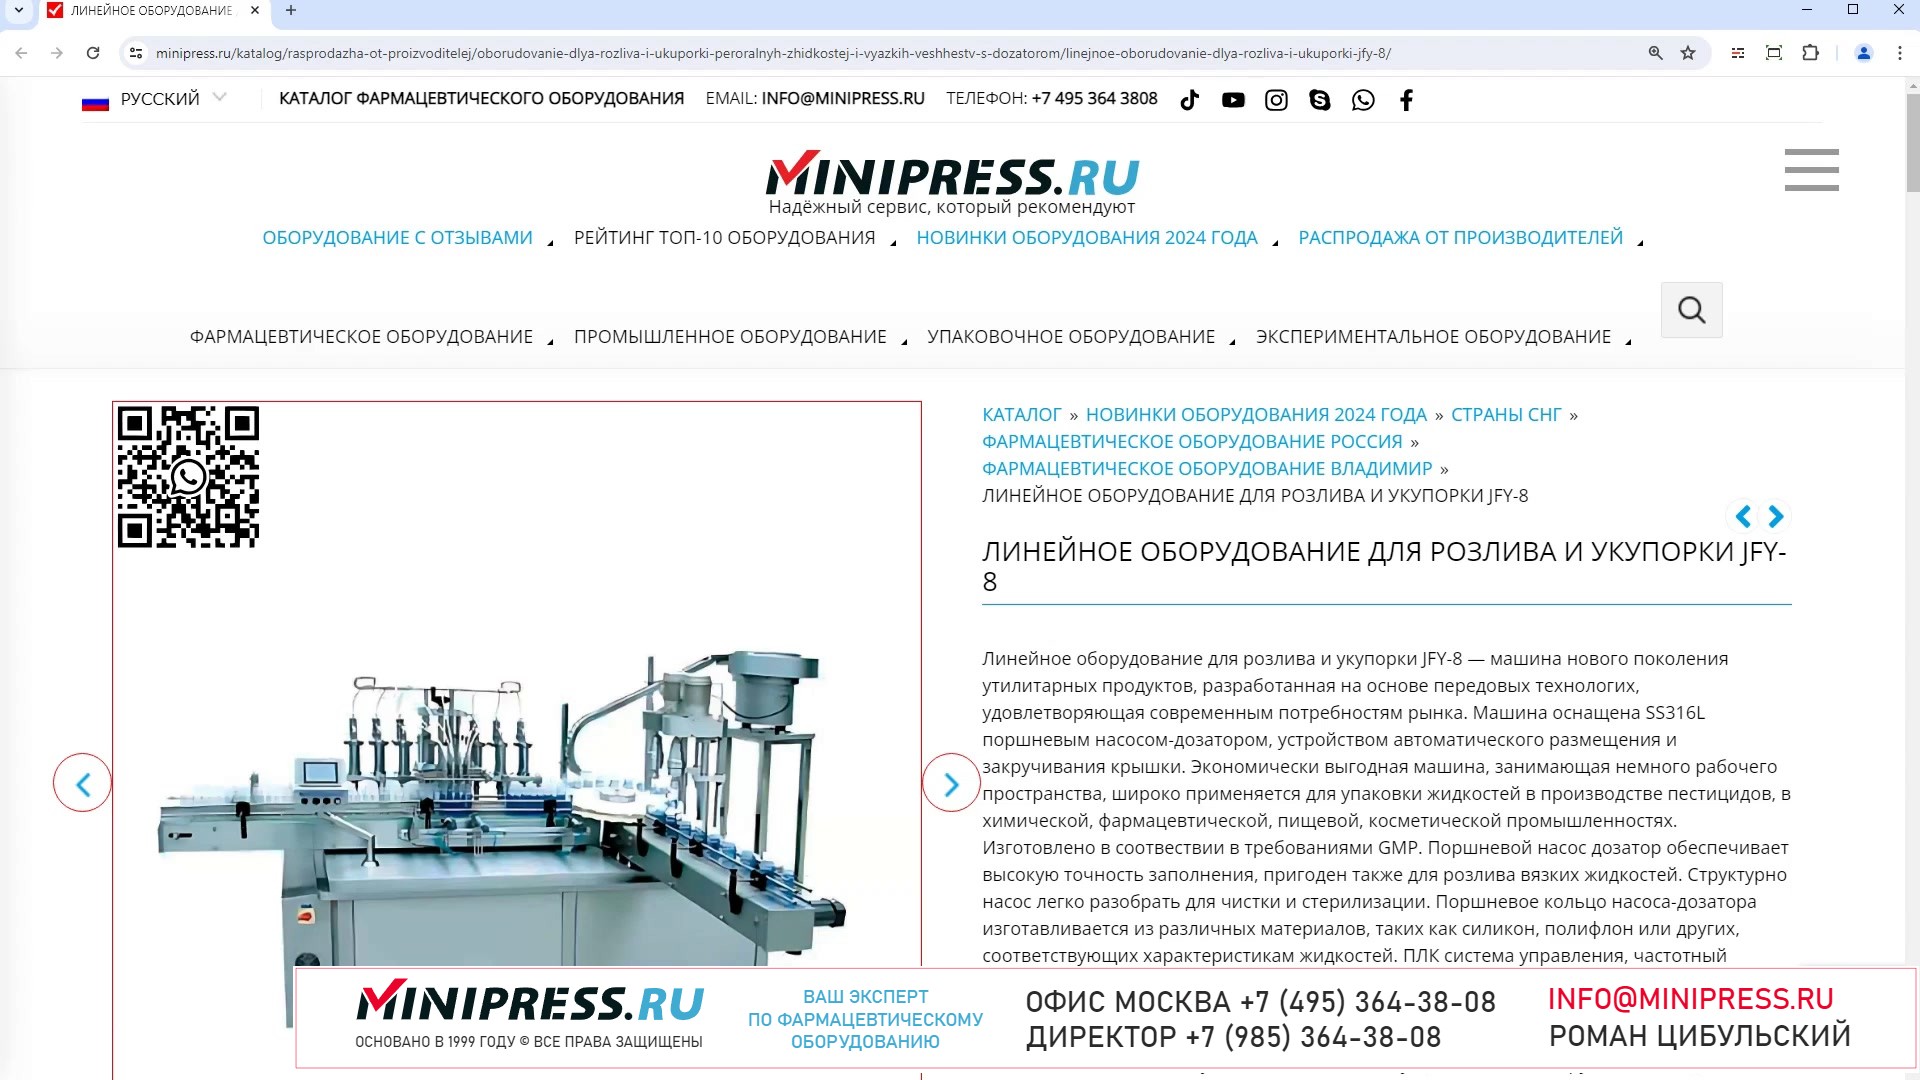 Minipress.ru Линейное оборудование для розлива и укупорки JFY-8